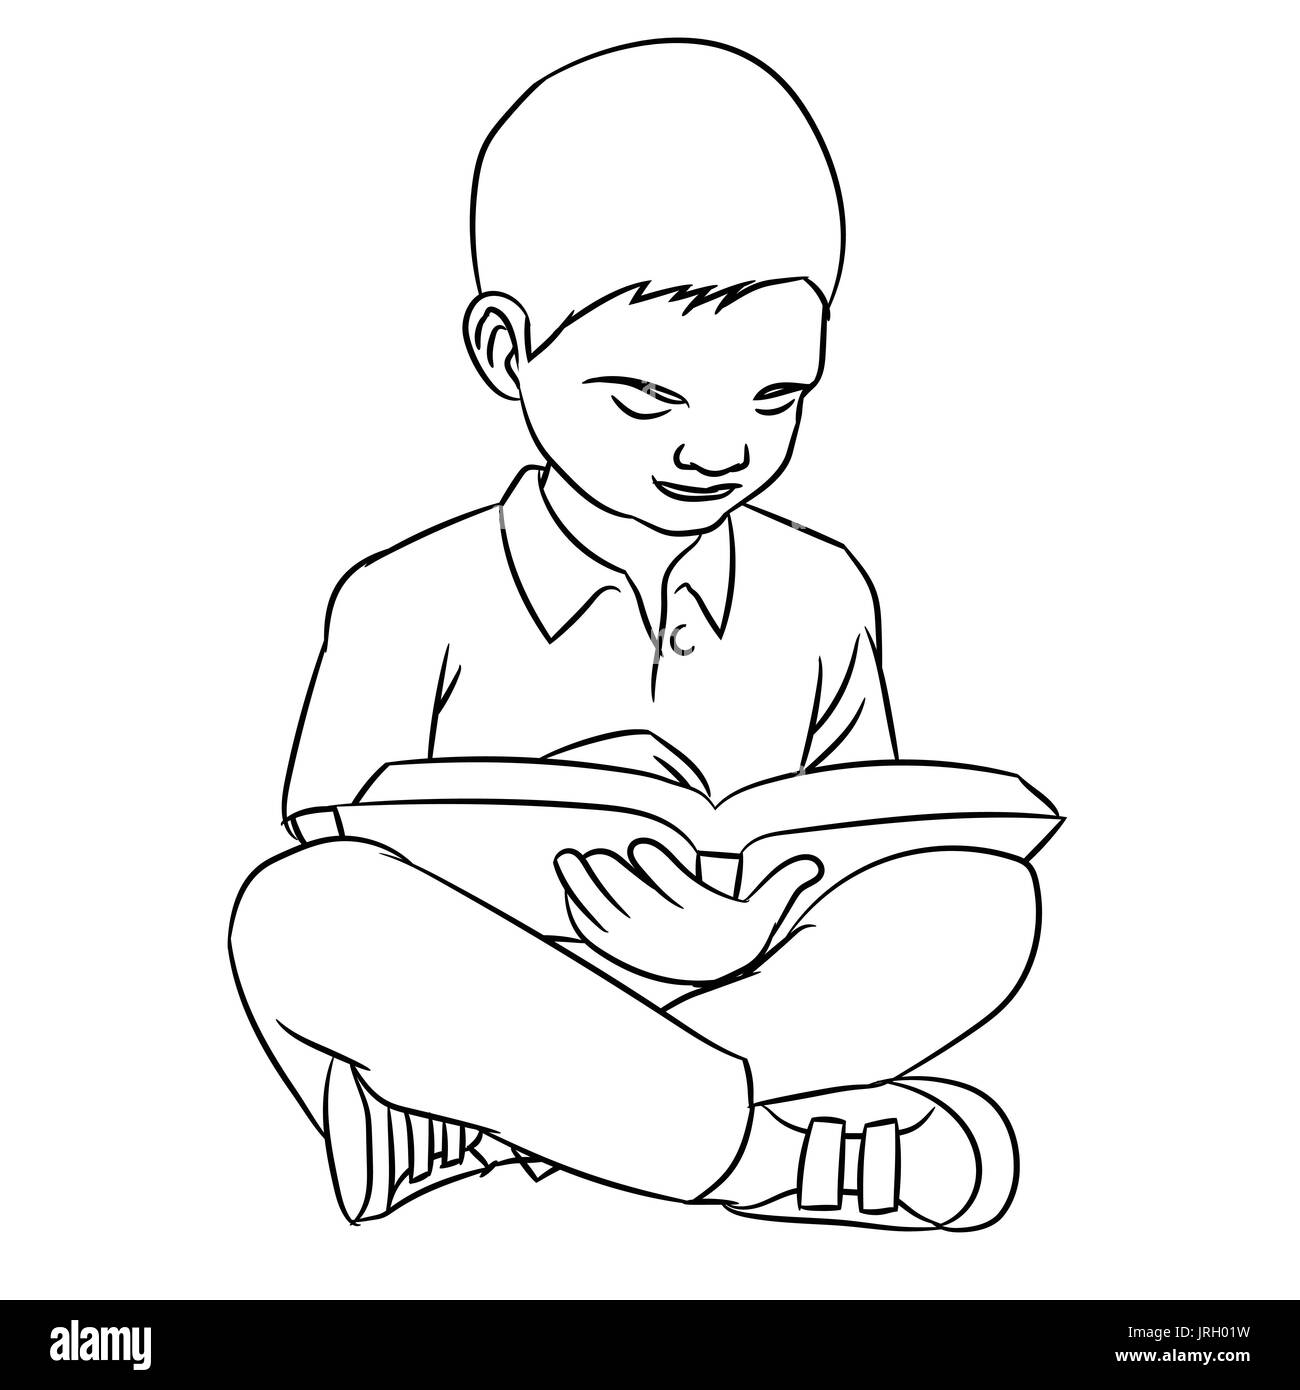 Croquis dessinés à la main d'un garçon de faire de la lecture, le caractère isolé de dessin animé, en noir et blanc Cartoon Vector Illustration pour livre de coloriage - Ligne dessinée Vector Illustration de Vecteur